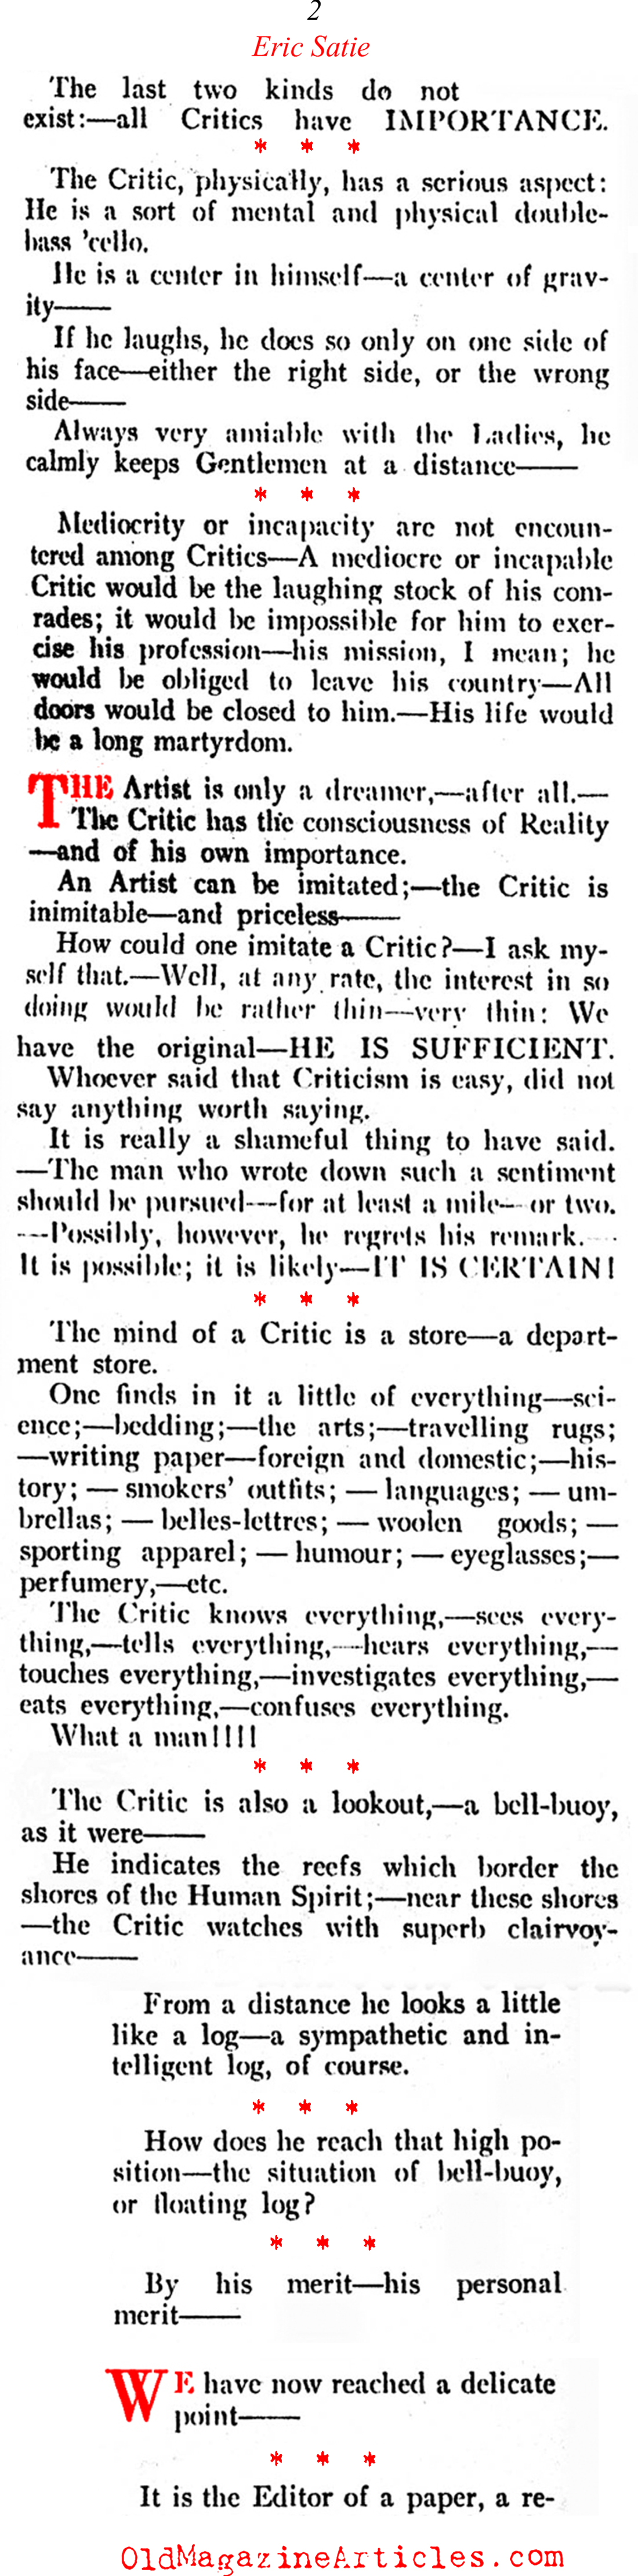 Eric Satie Goes After the Critics (Vanity Fair, 1921)